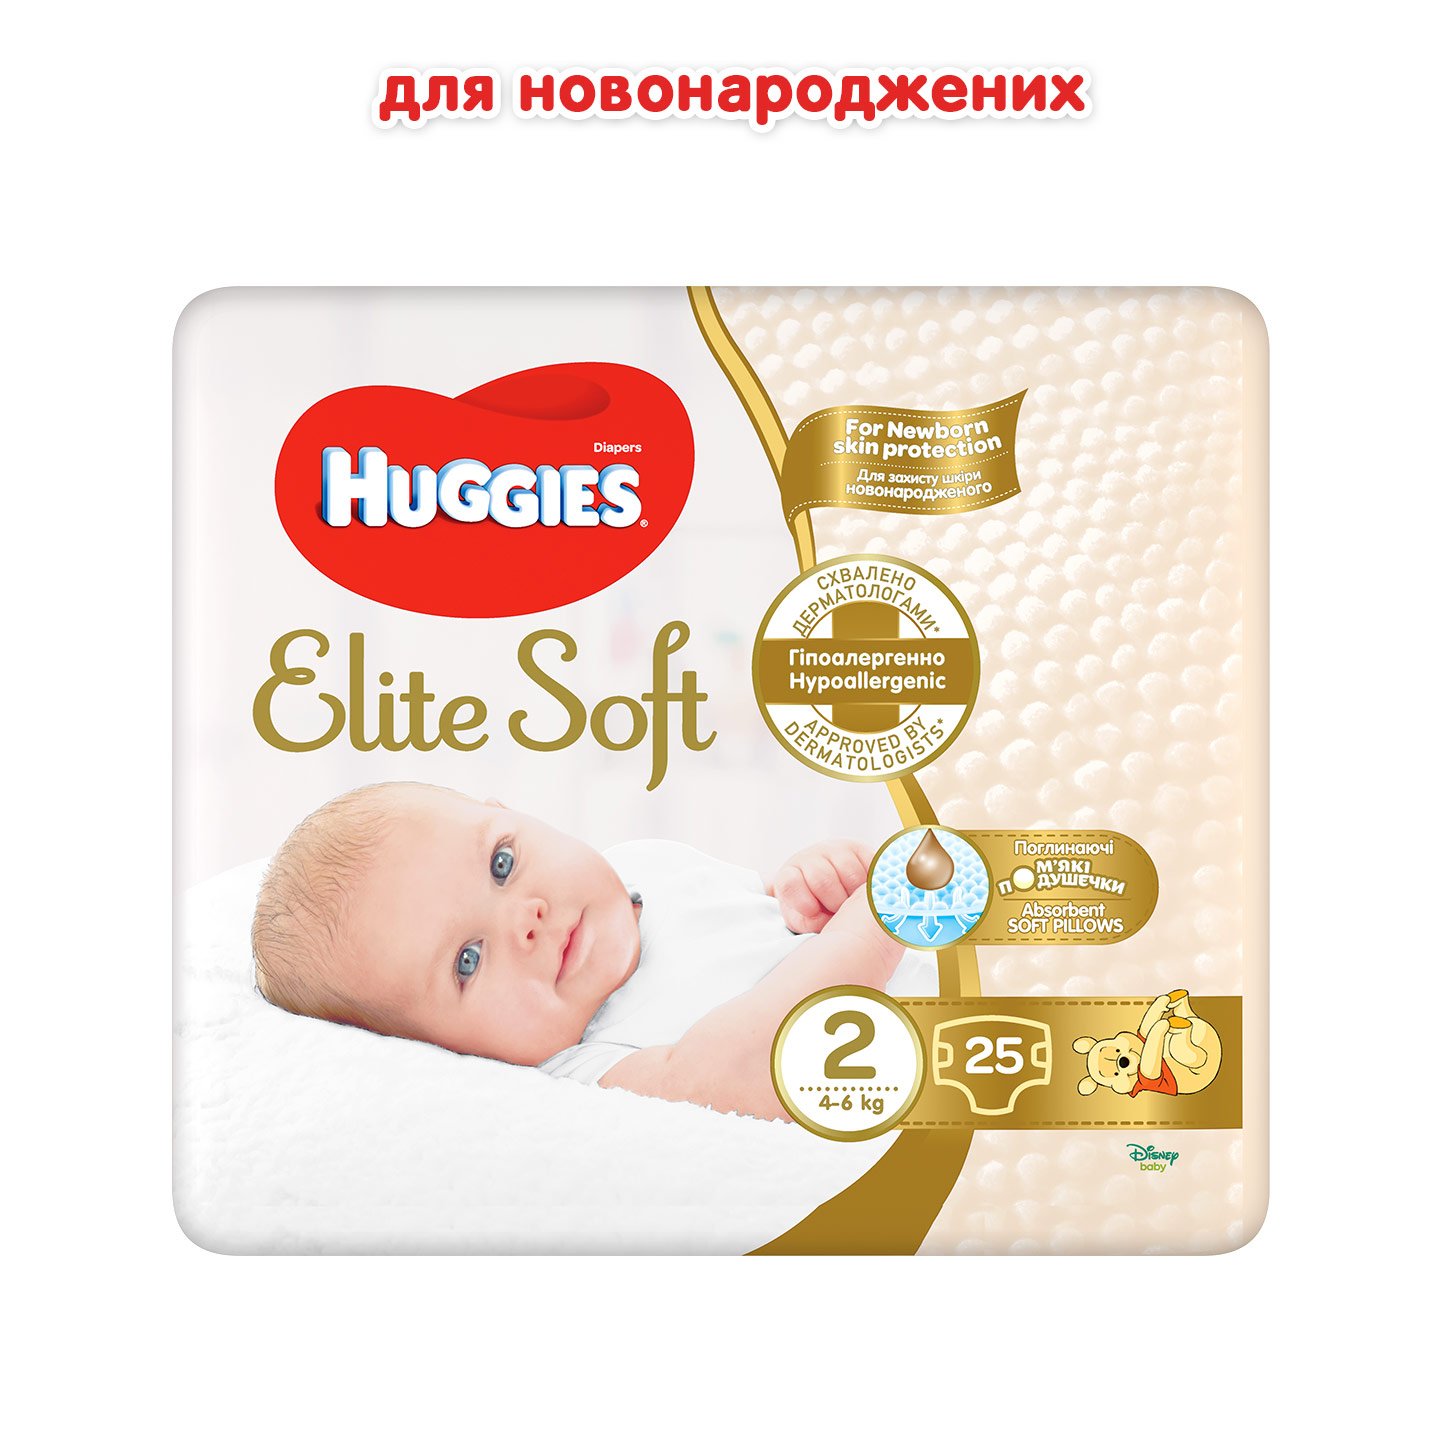 Подгузники Huggies Elite Soft 2 (4-6 кг), 25 шт. - фото 2